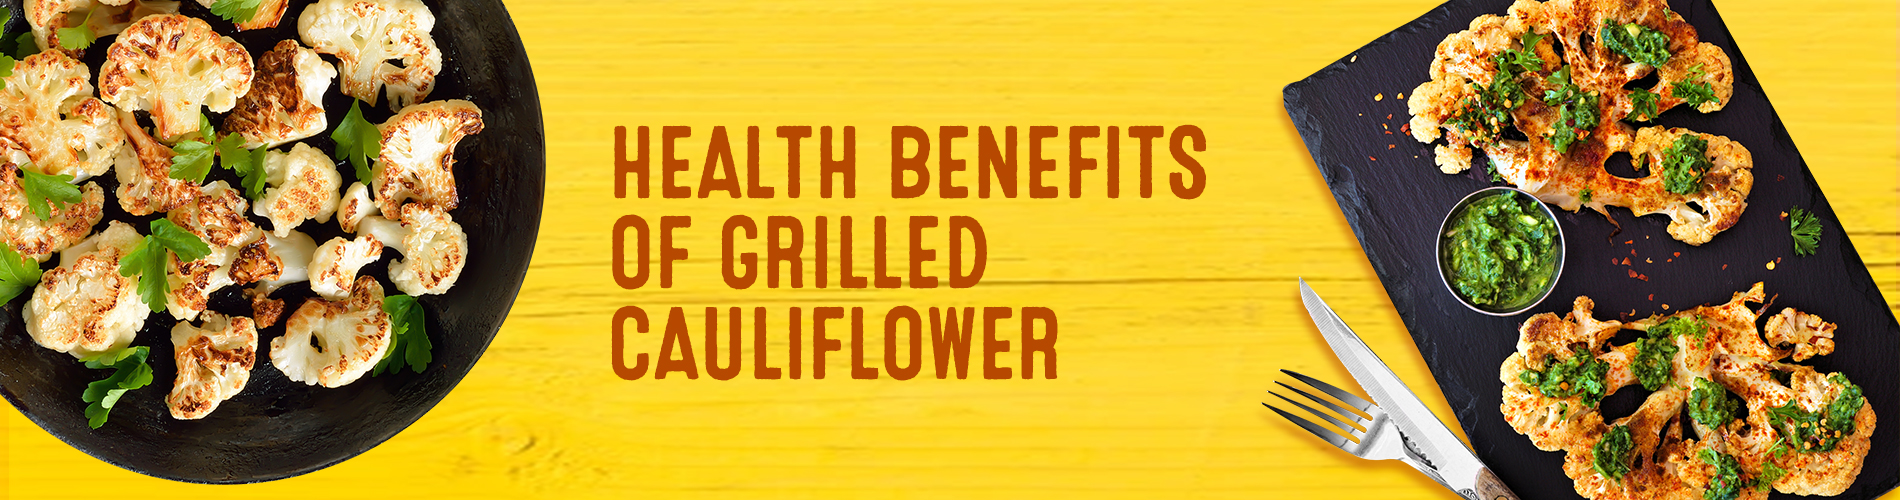 Health benefits of Grilled Cauliflower